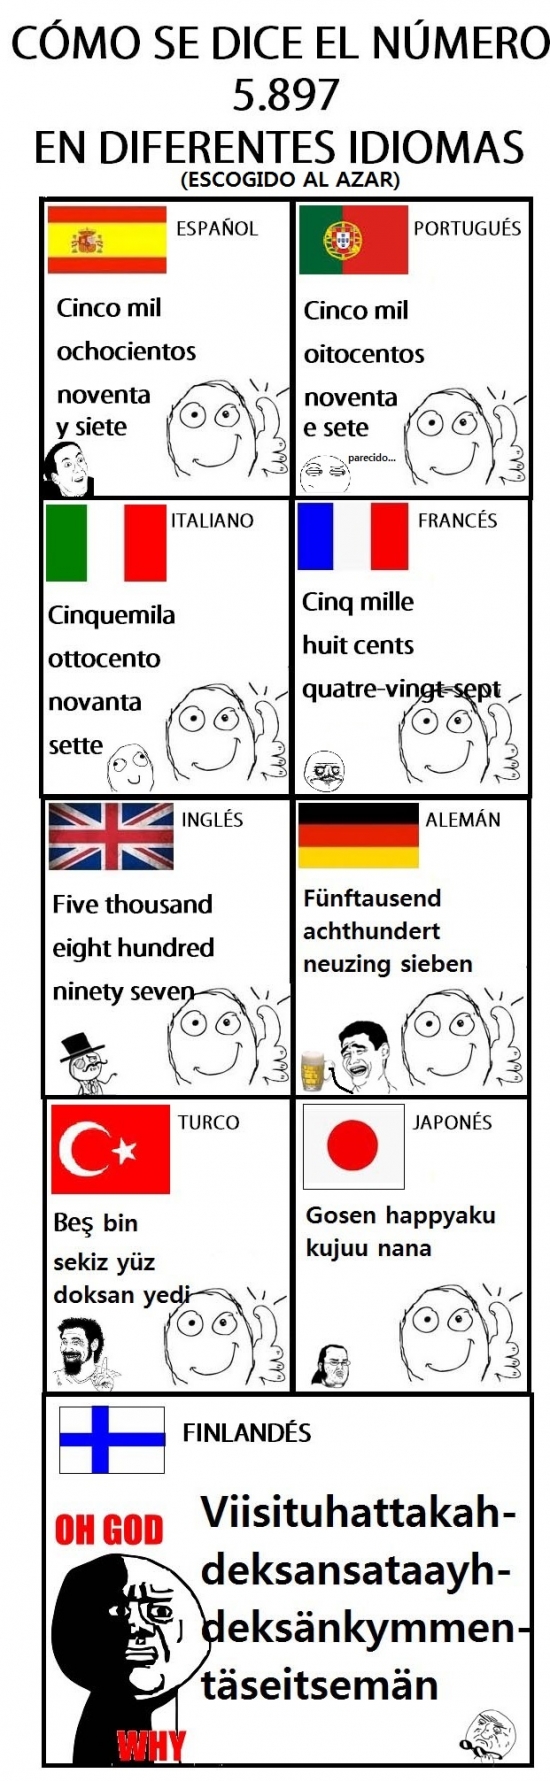 Oh_god_why - Cosas de idiomas